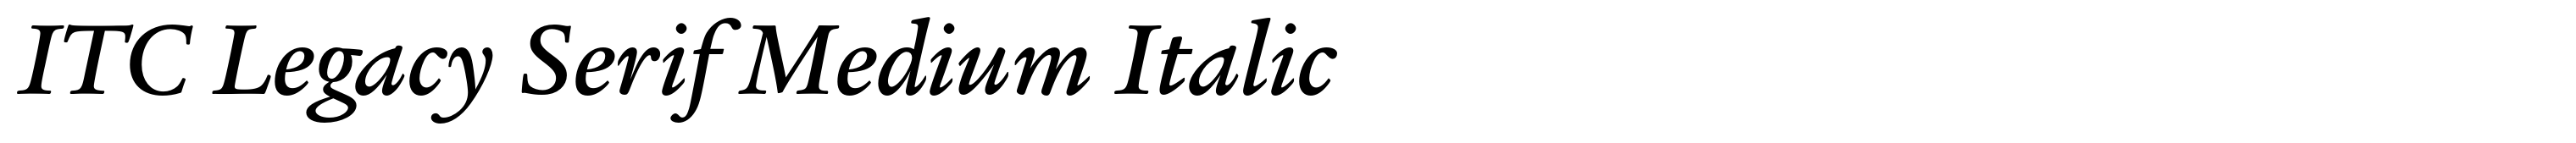 ITC Legacy Serif Medium Italic